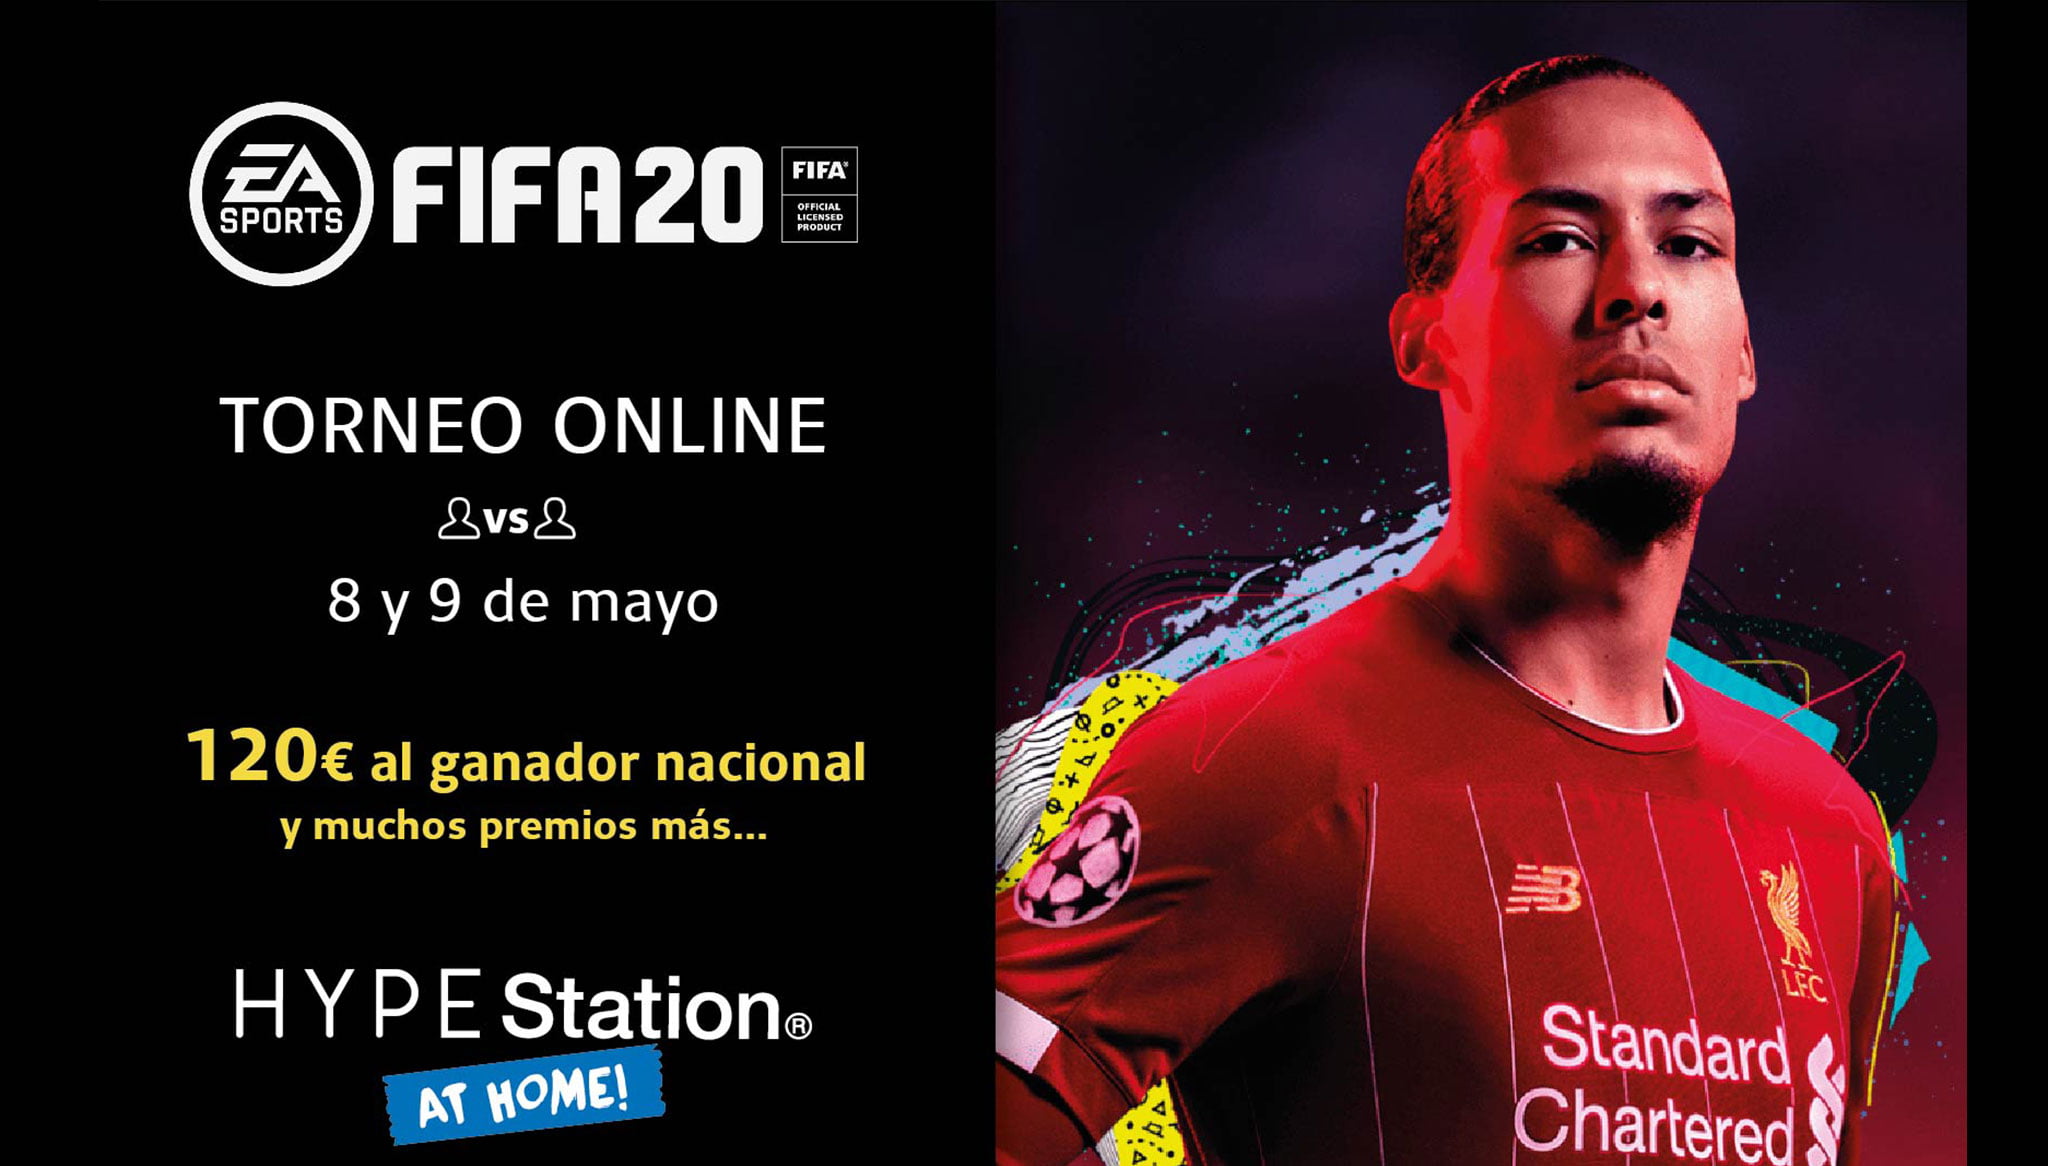 Torneo online el 8 y 9 de mayo FIFA – Portal de la Marina